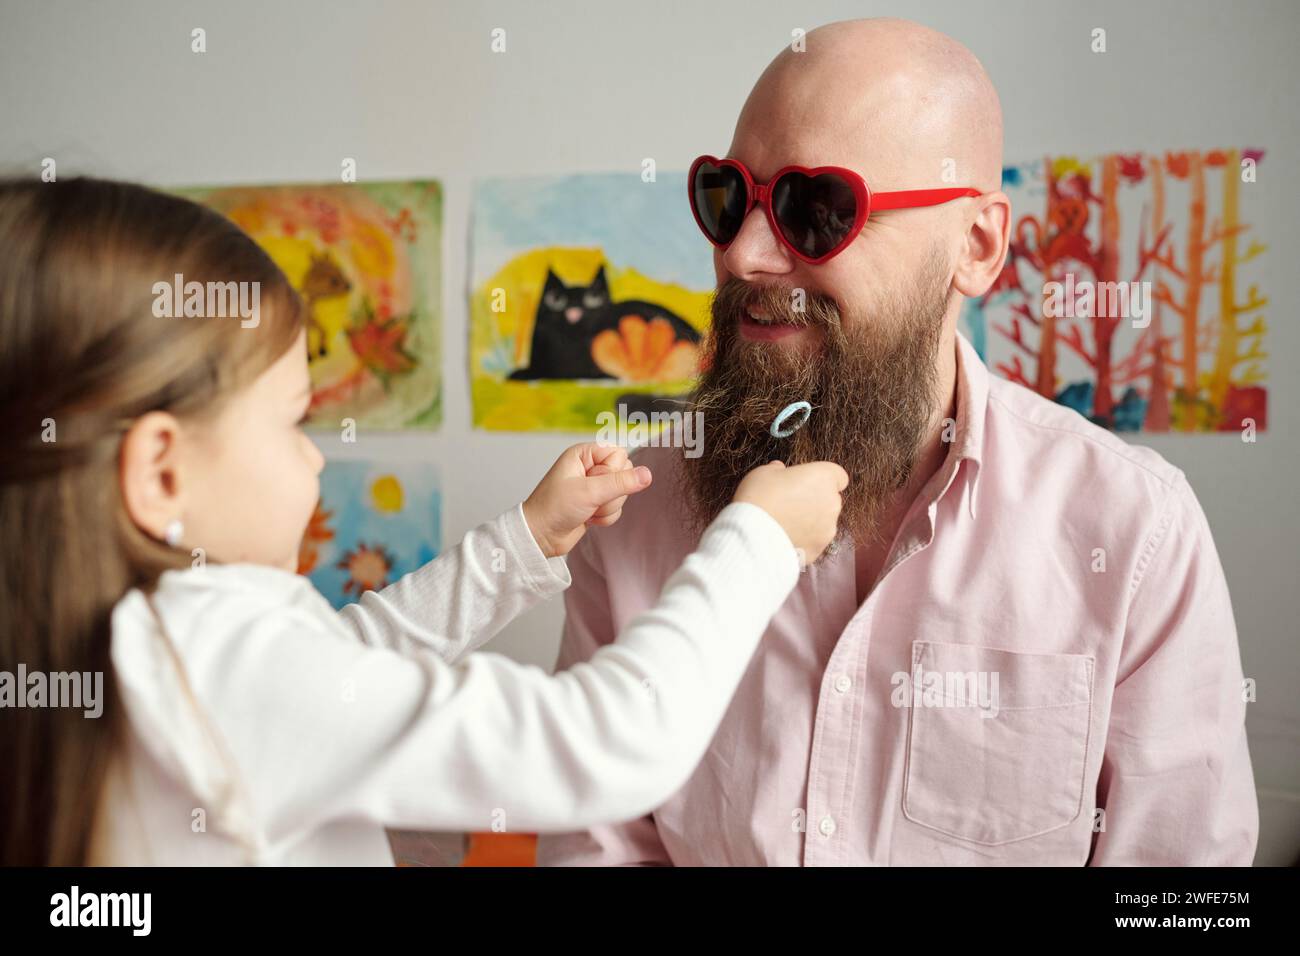 Ein kleines Mädchen, das mit dickem Bart ihres glücklichen Glatzenvaters spielt, in einer herzförmigen Sonnenbrille und einem Hemd, das vor seiner Tochter steht Stockfoto